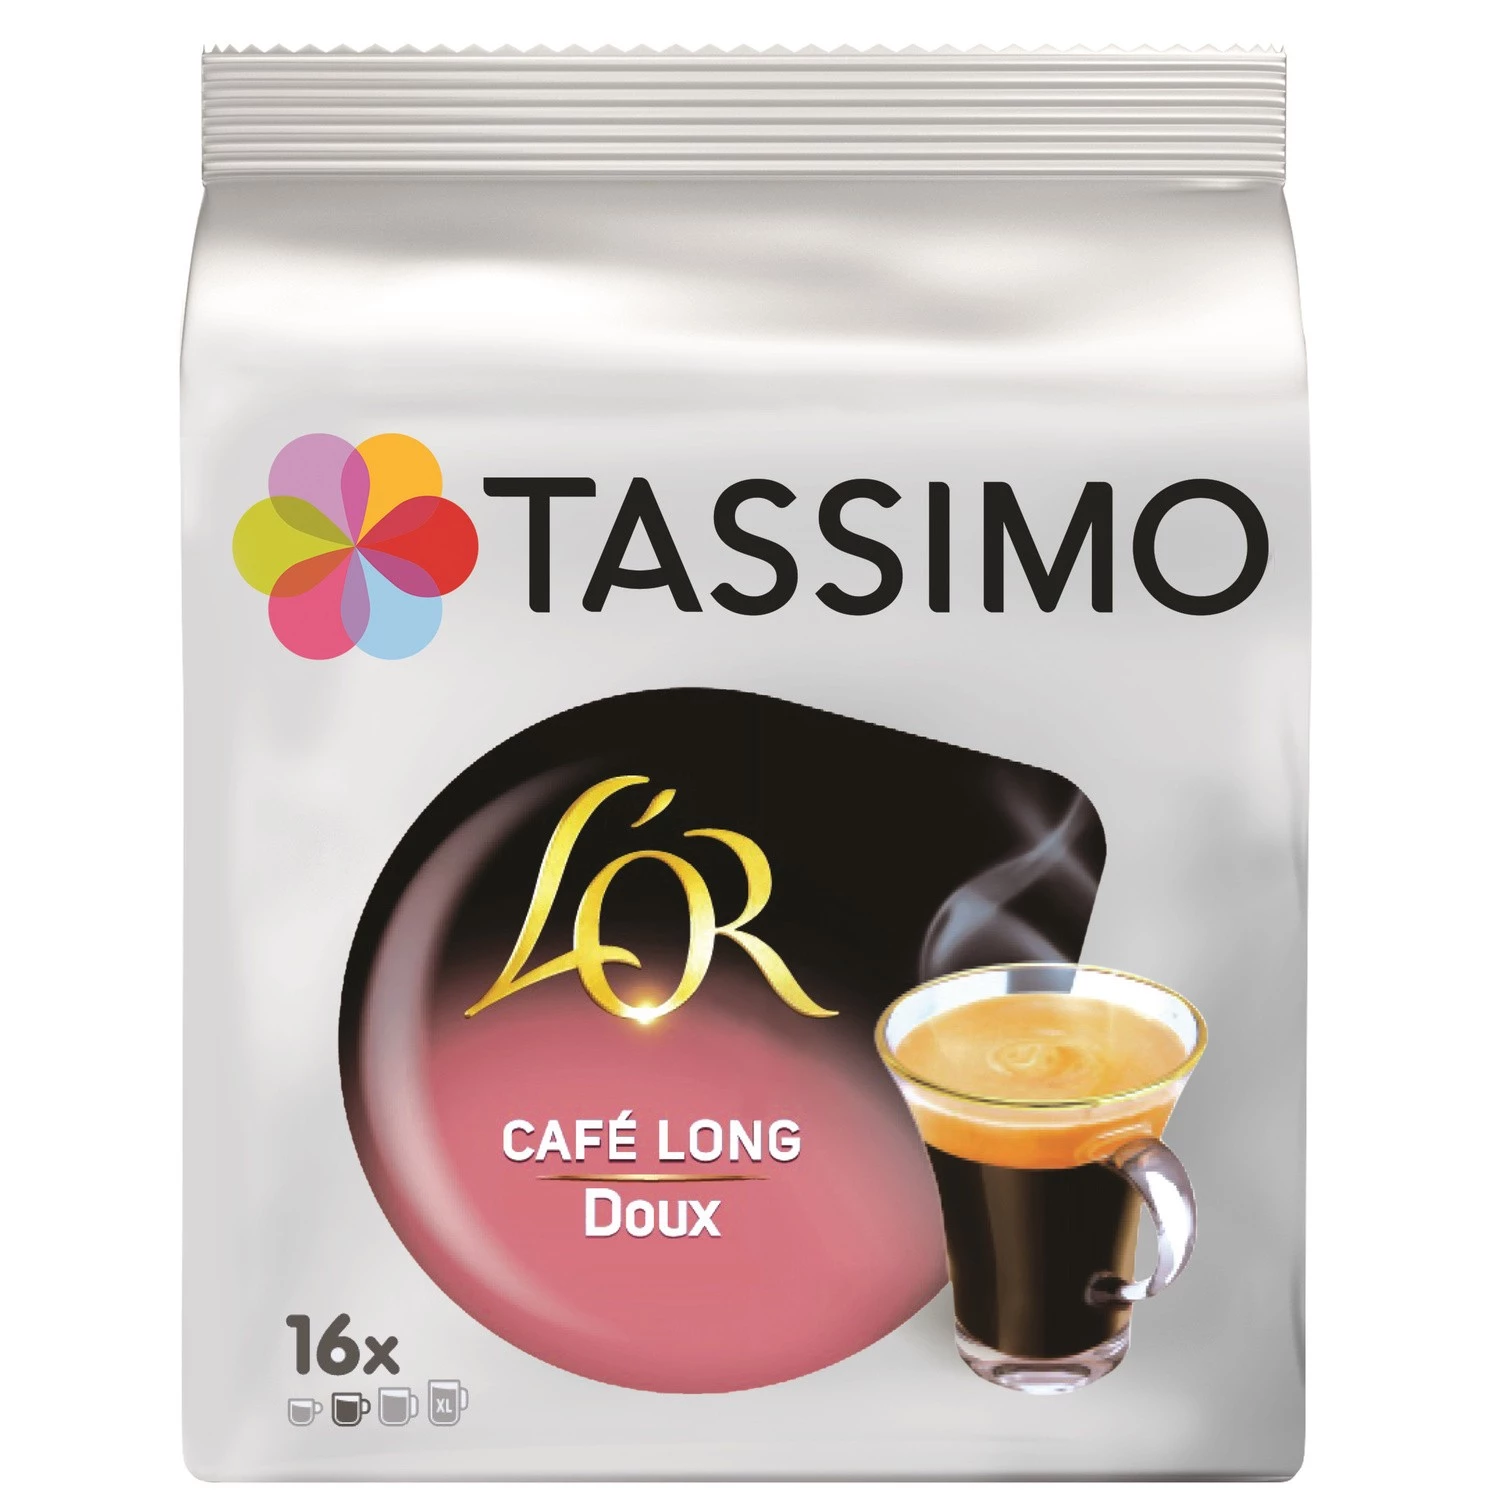 长甜咖啡 l'or x16 粒 89g - TASSIMO